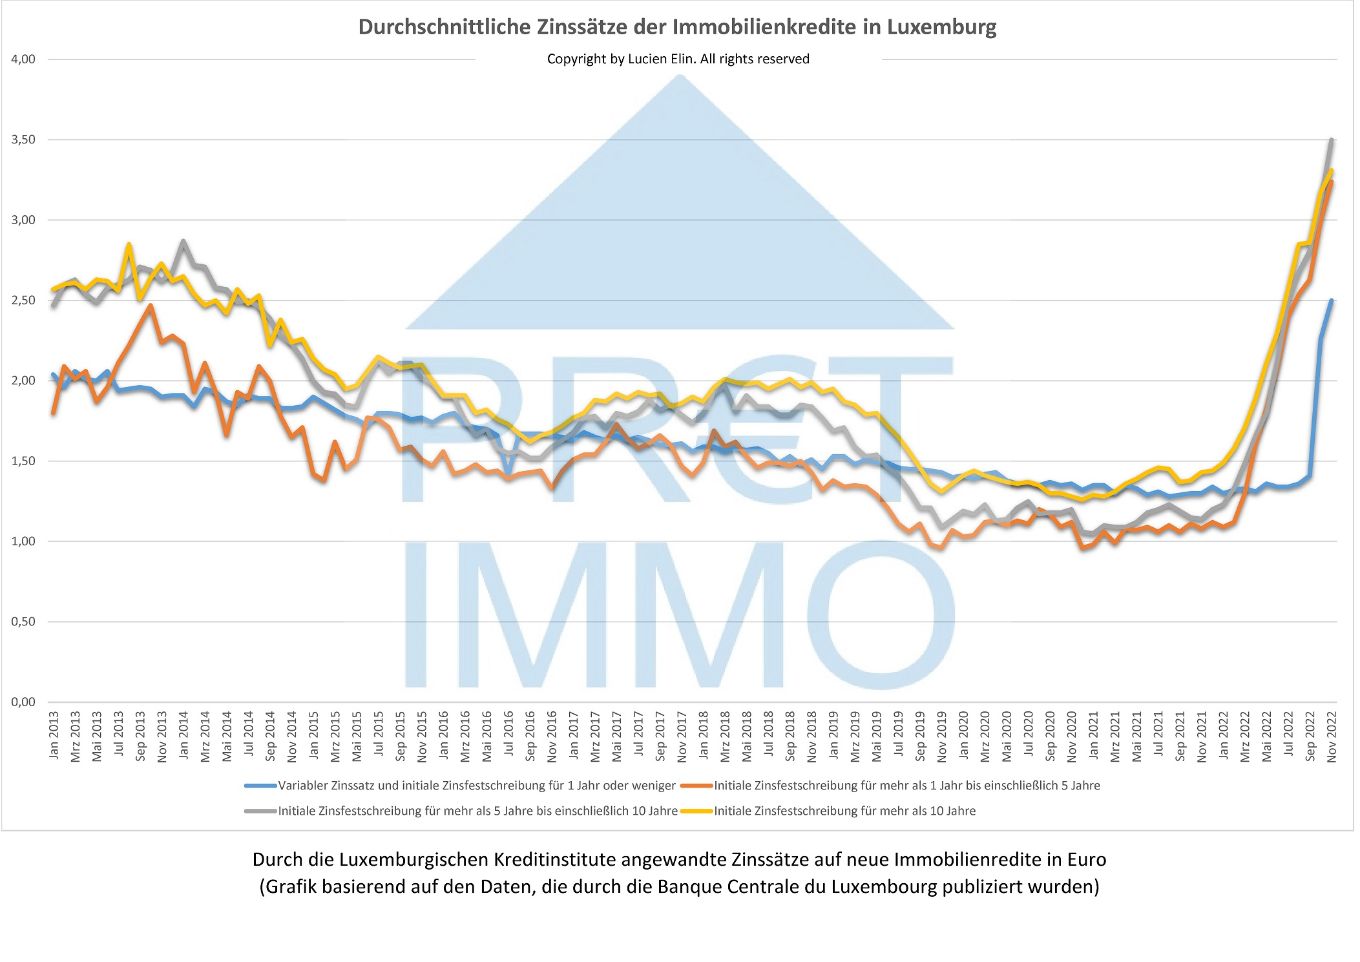 Durchschnittliche Zinssätze der Immobilienkredite in Luxemburg, die die BCL im Januar 2023 veröffentlicht hat